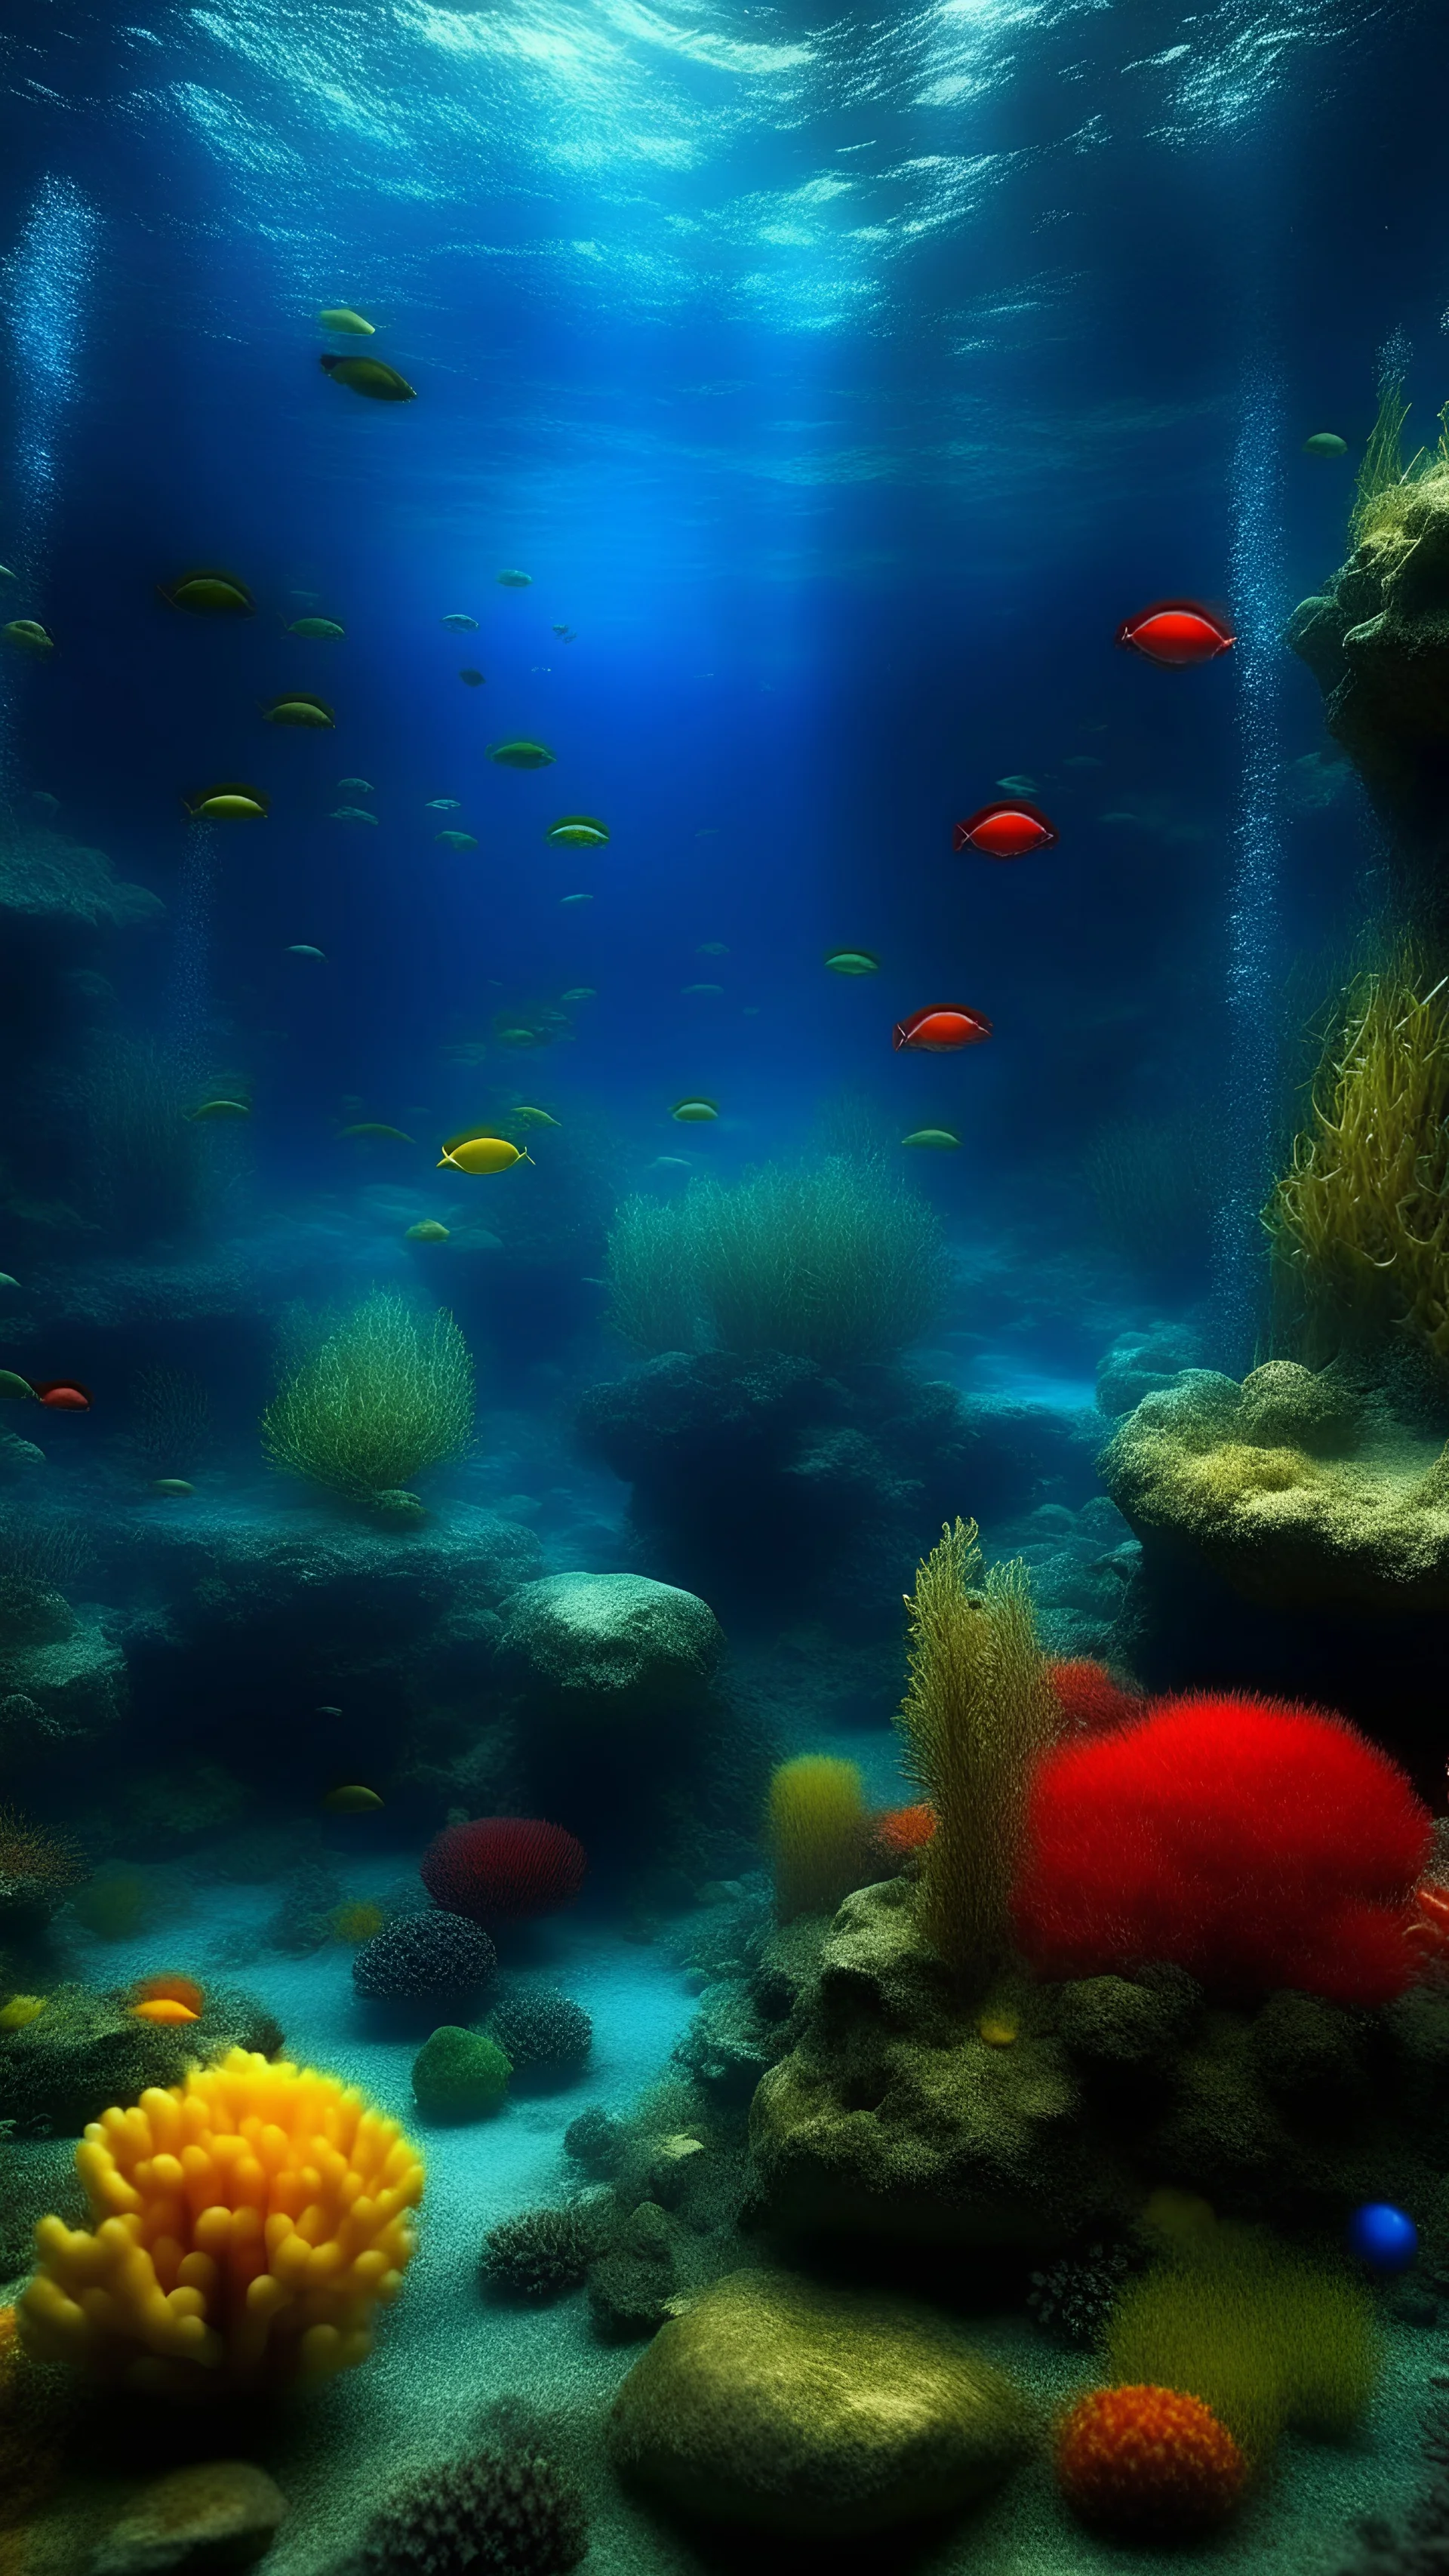 垂直海水水族馆RGB全高清暴民海底世界图片， 海鲜世界， 海底世界壁纸， 海鱼图片， 水族馆， 鱼缸背景图片， 水族馆壁纸手机屏幕壁纸格式， 框架，